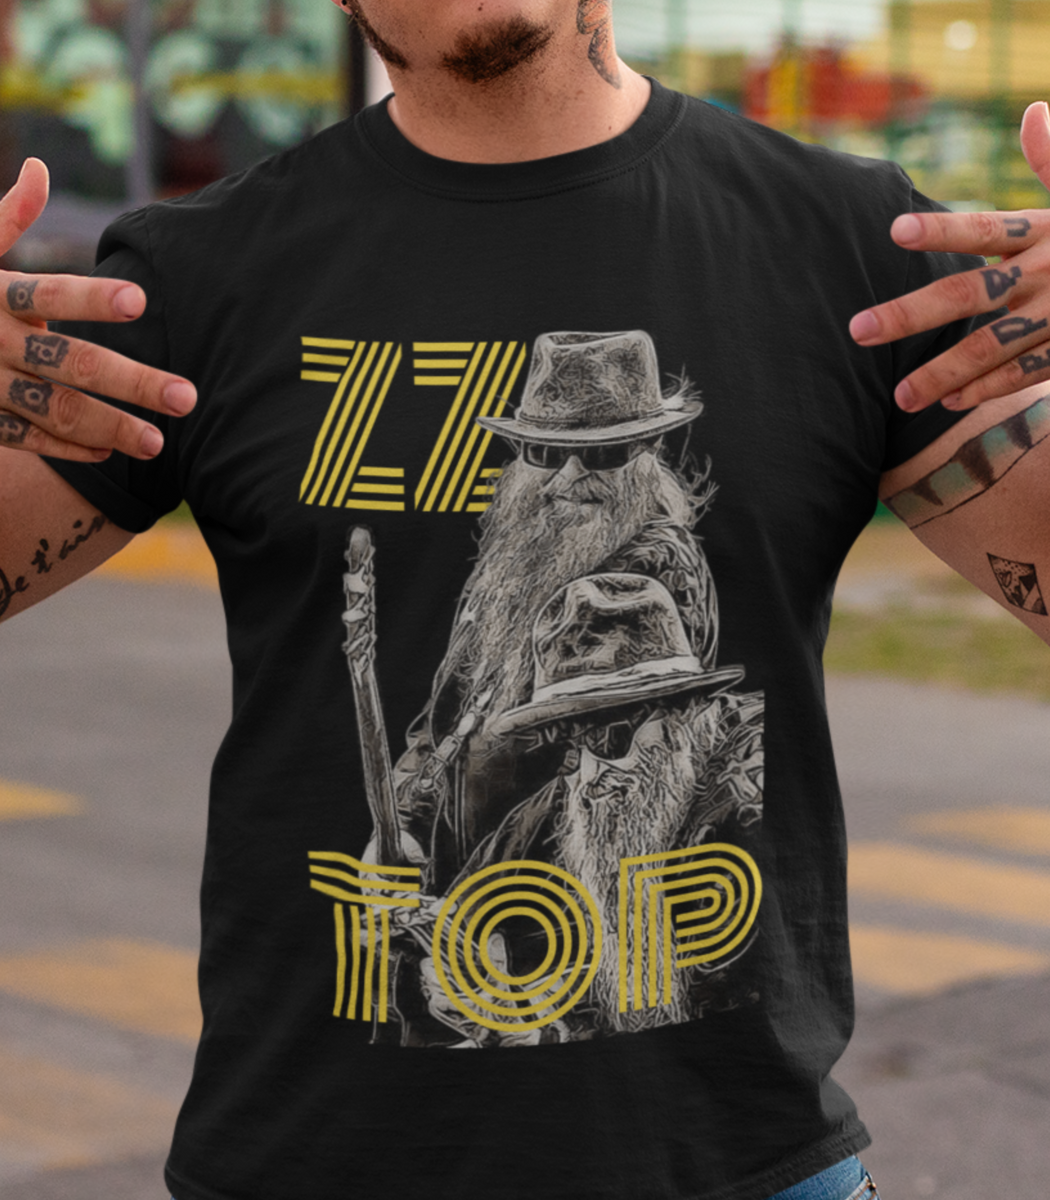 Nome do produto: ZZ Top